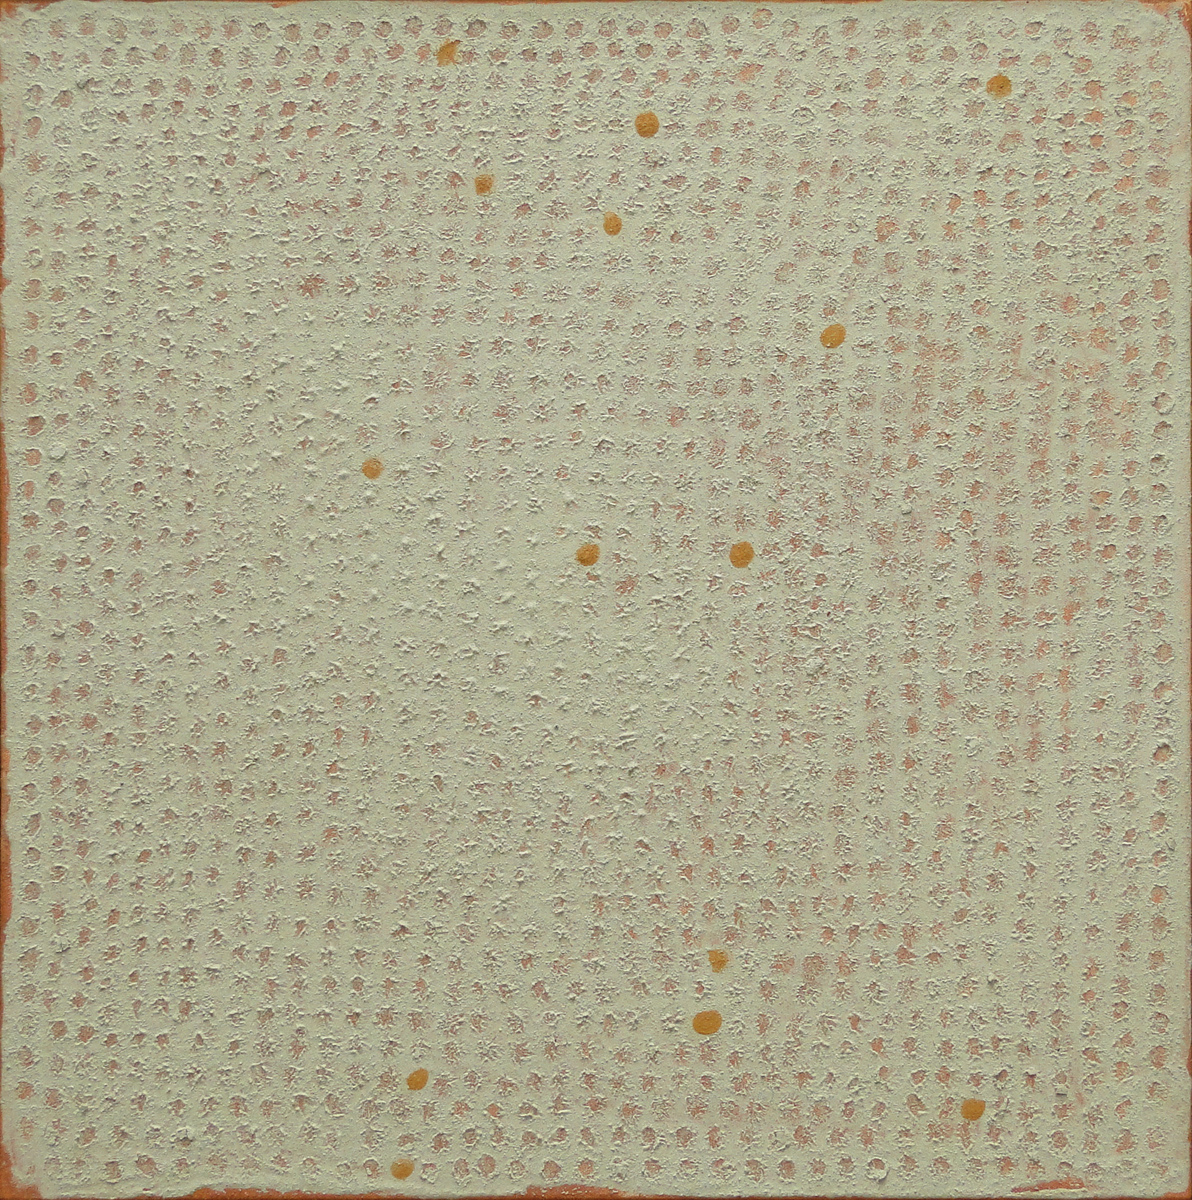 7265 - Nick Rands, terra aglutinada sobre tela, 60 x 60 cm, ass. dt 2012